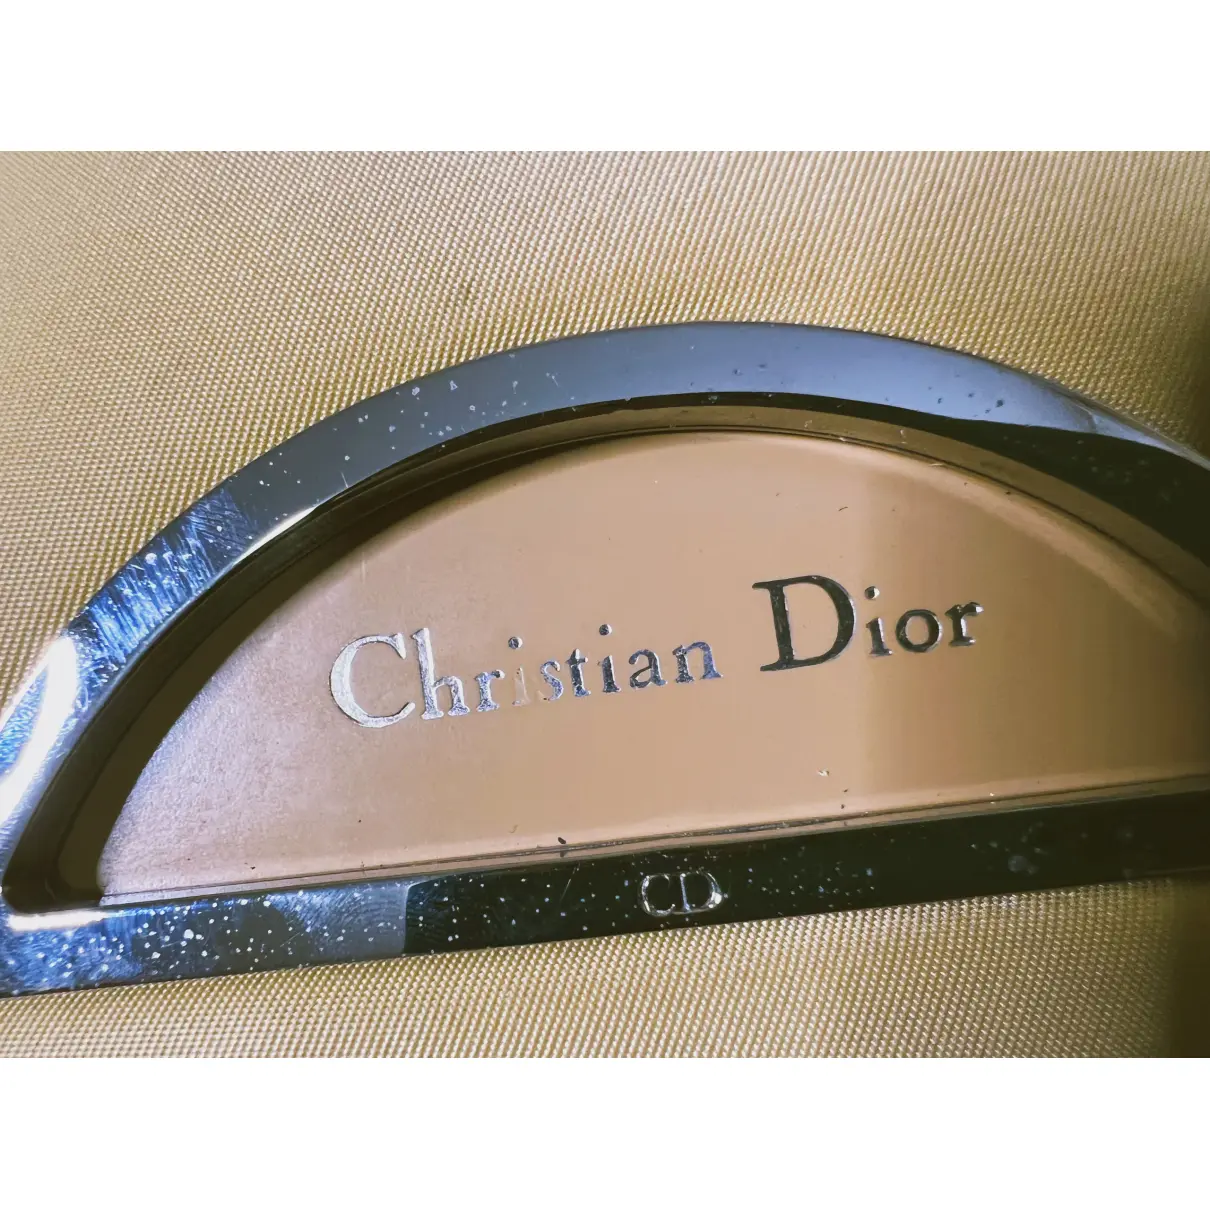 Malice cloth handbag Dior